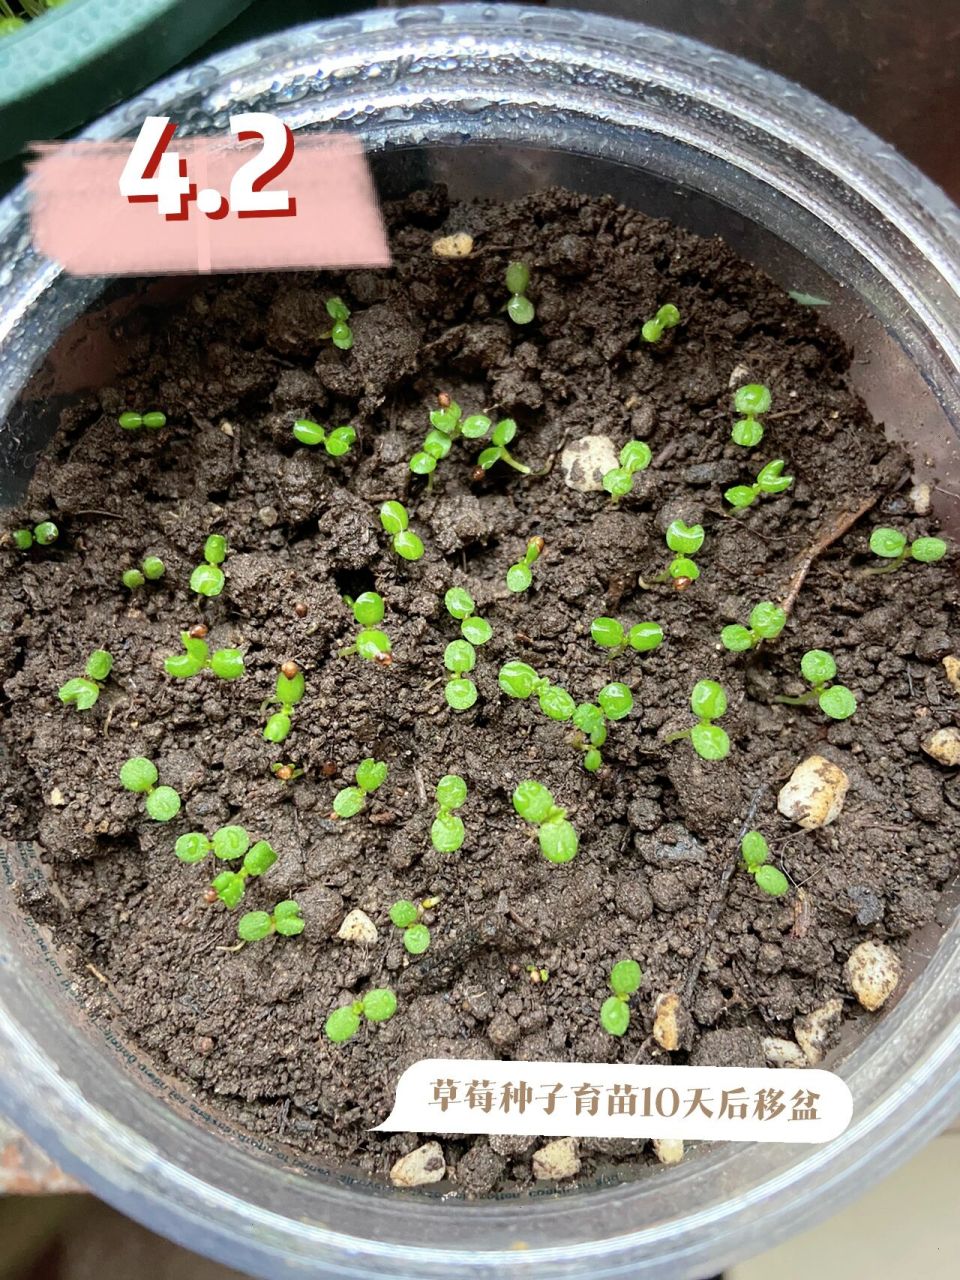 草莓种子育苗成功啦 20天左右的草莓幼苗97 长得快的准备长出第三片